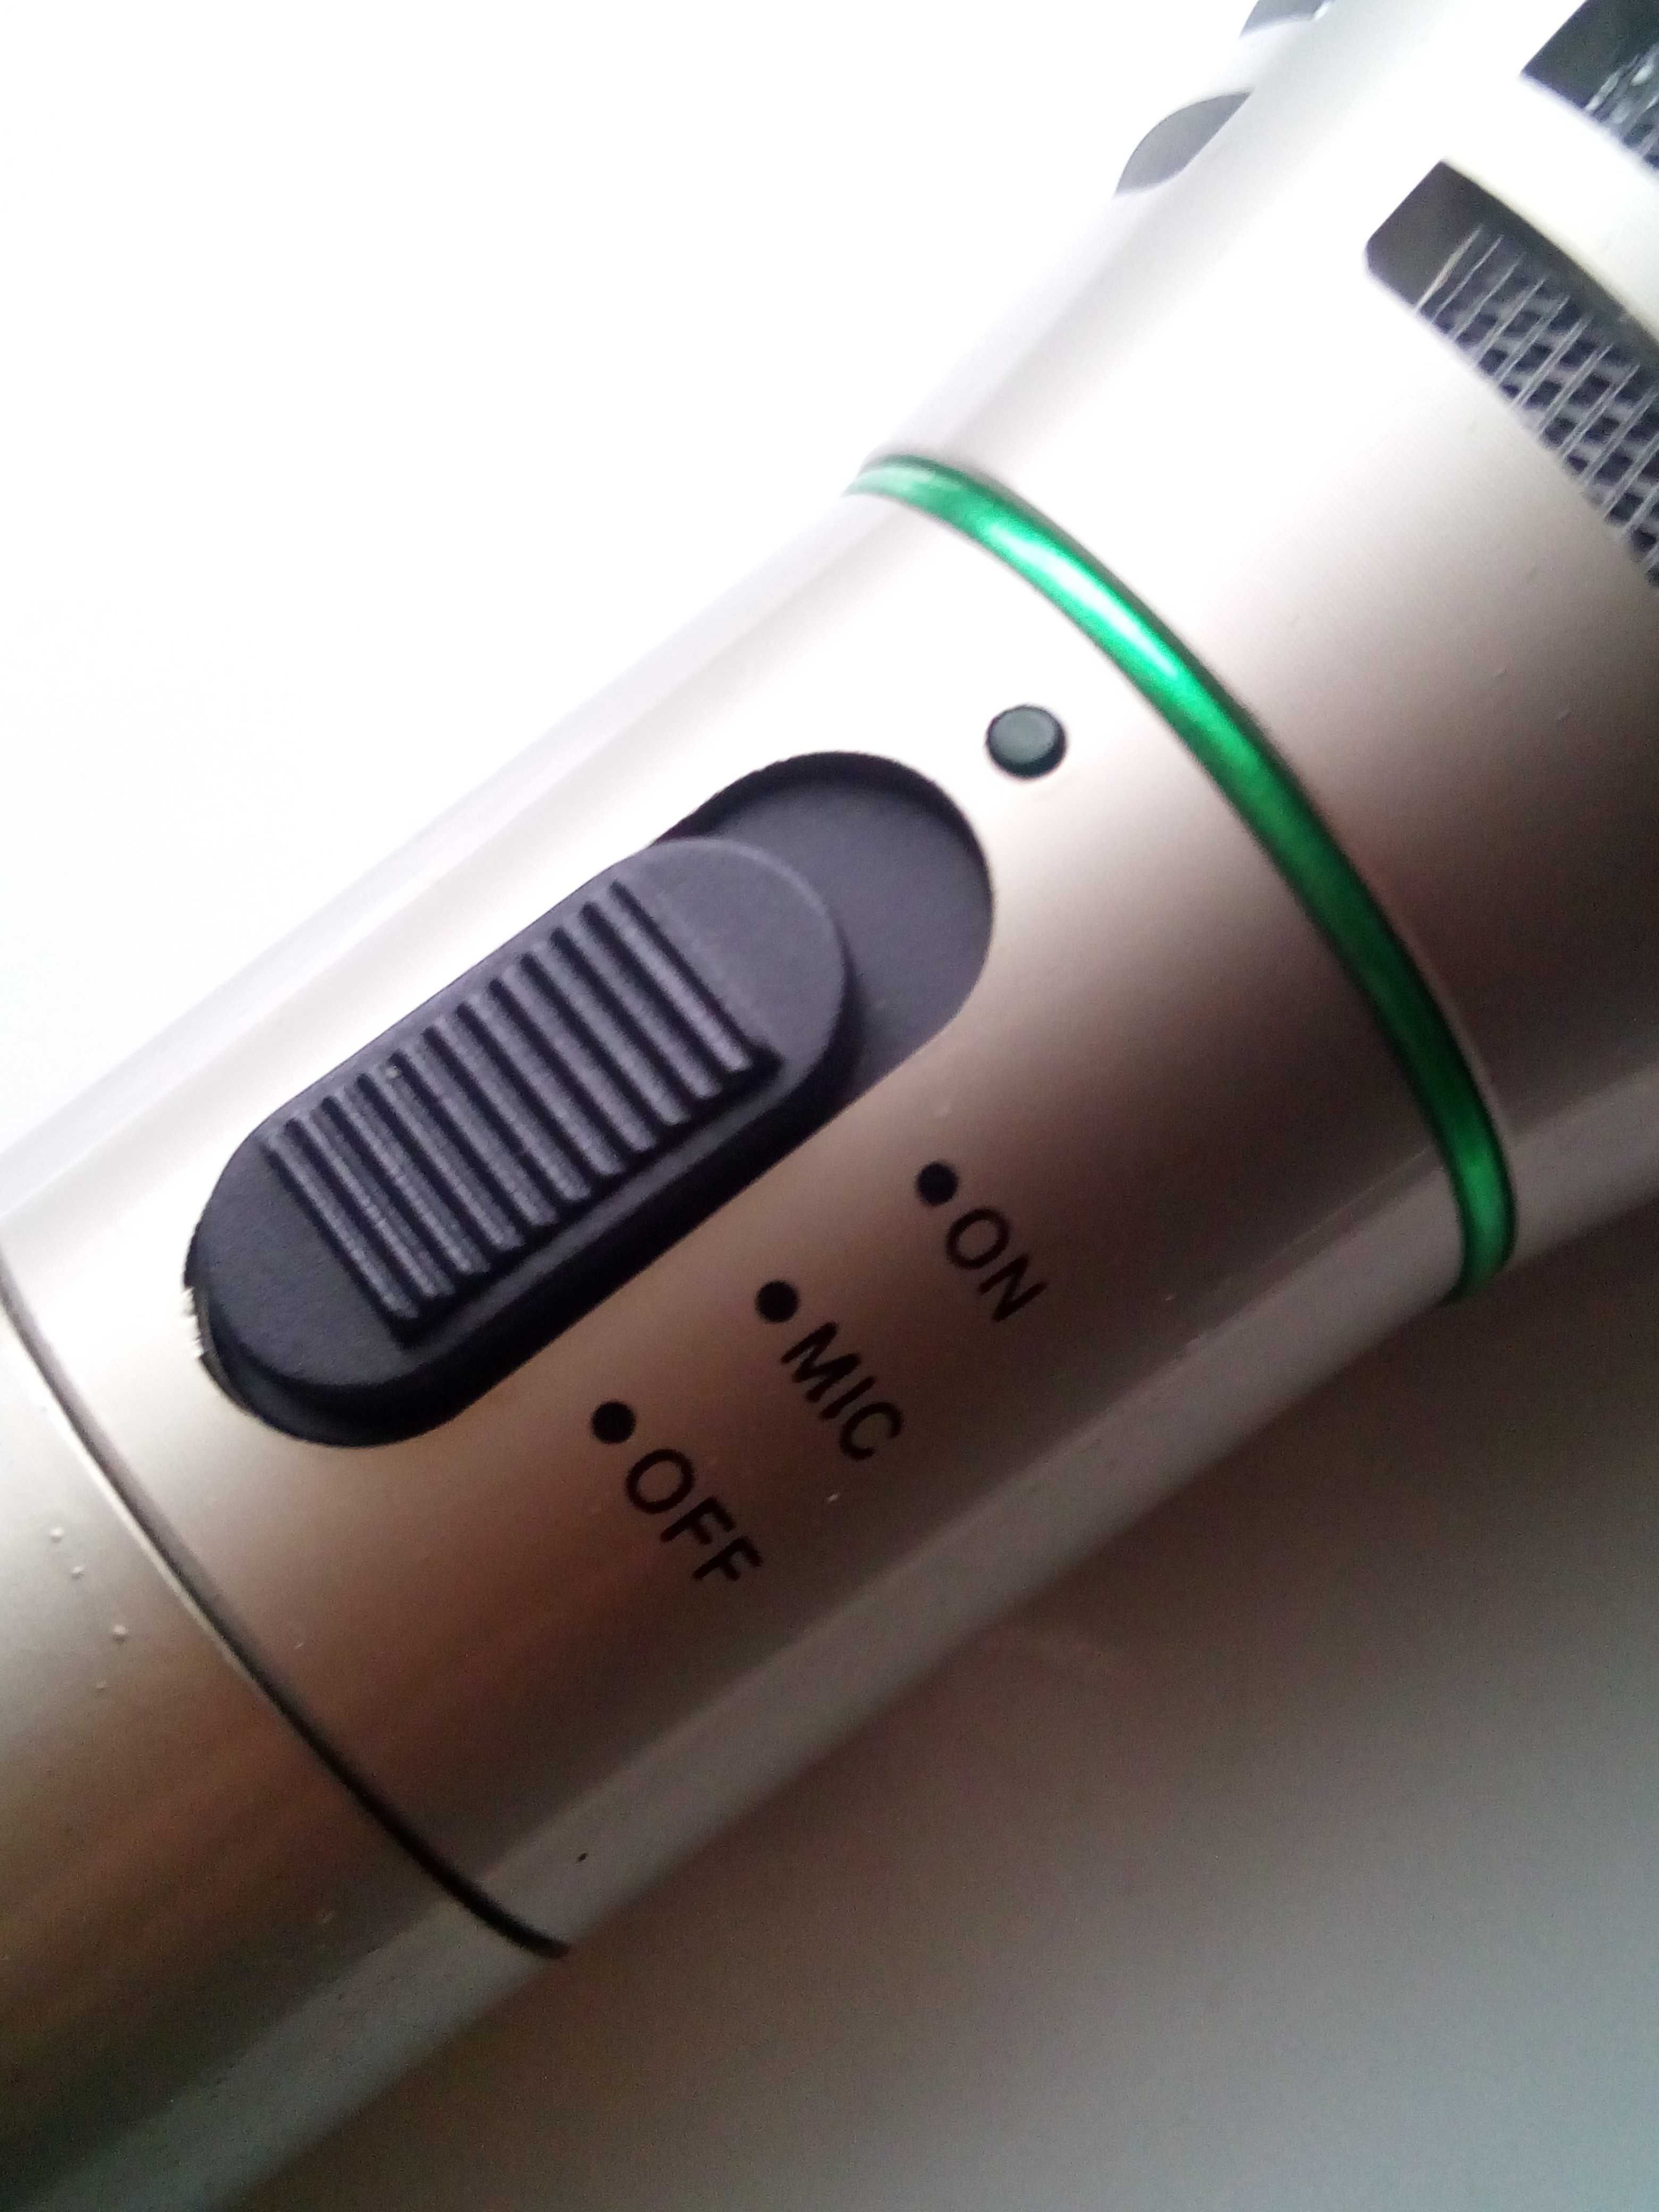 Радио микрофон Samsung SM-960